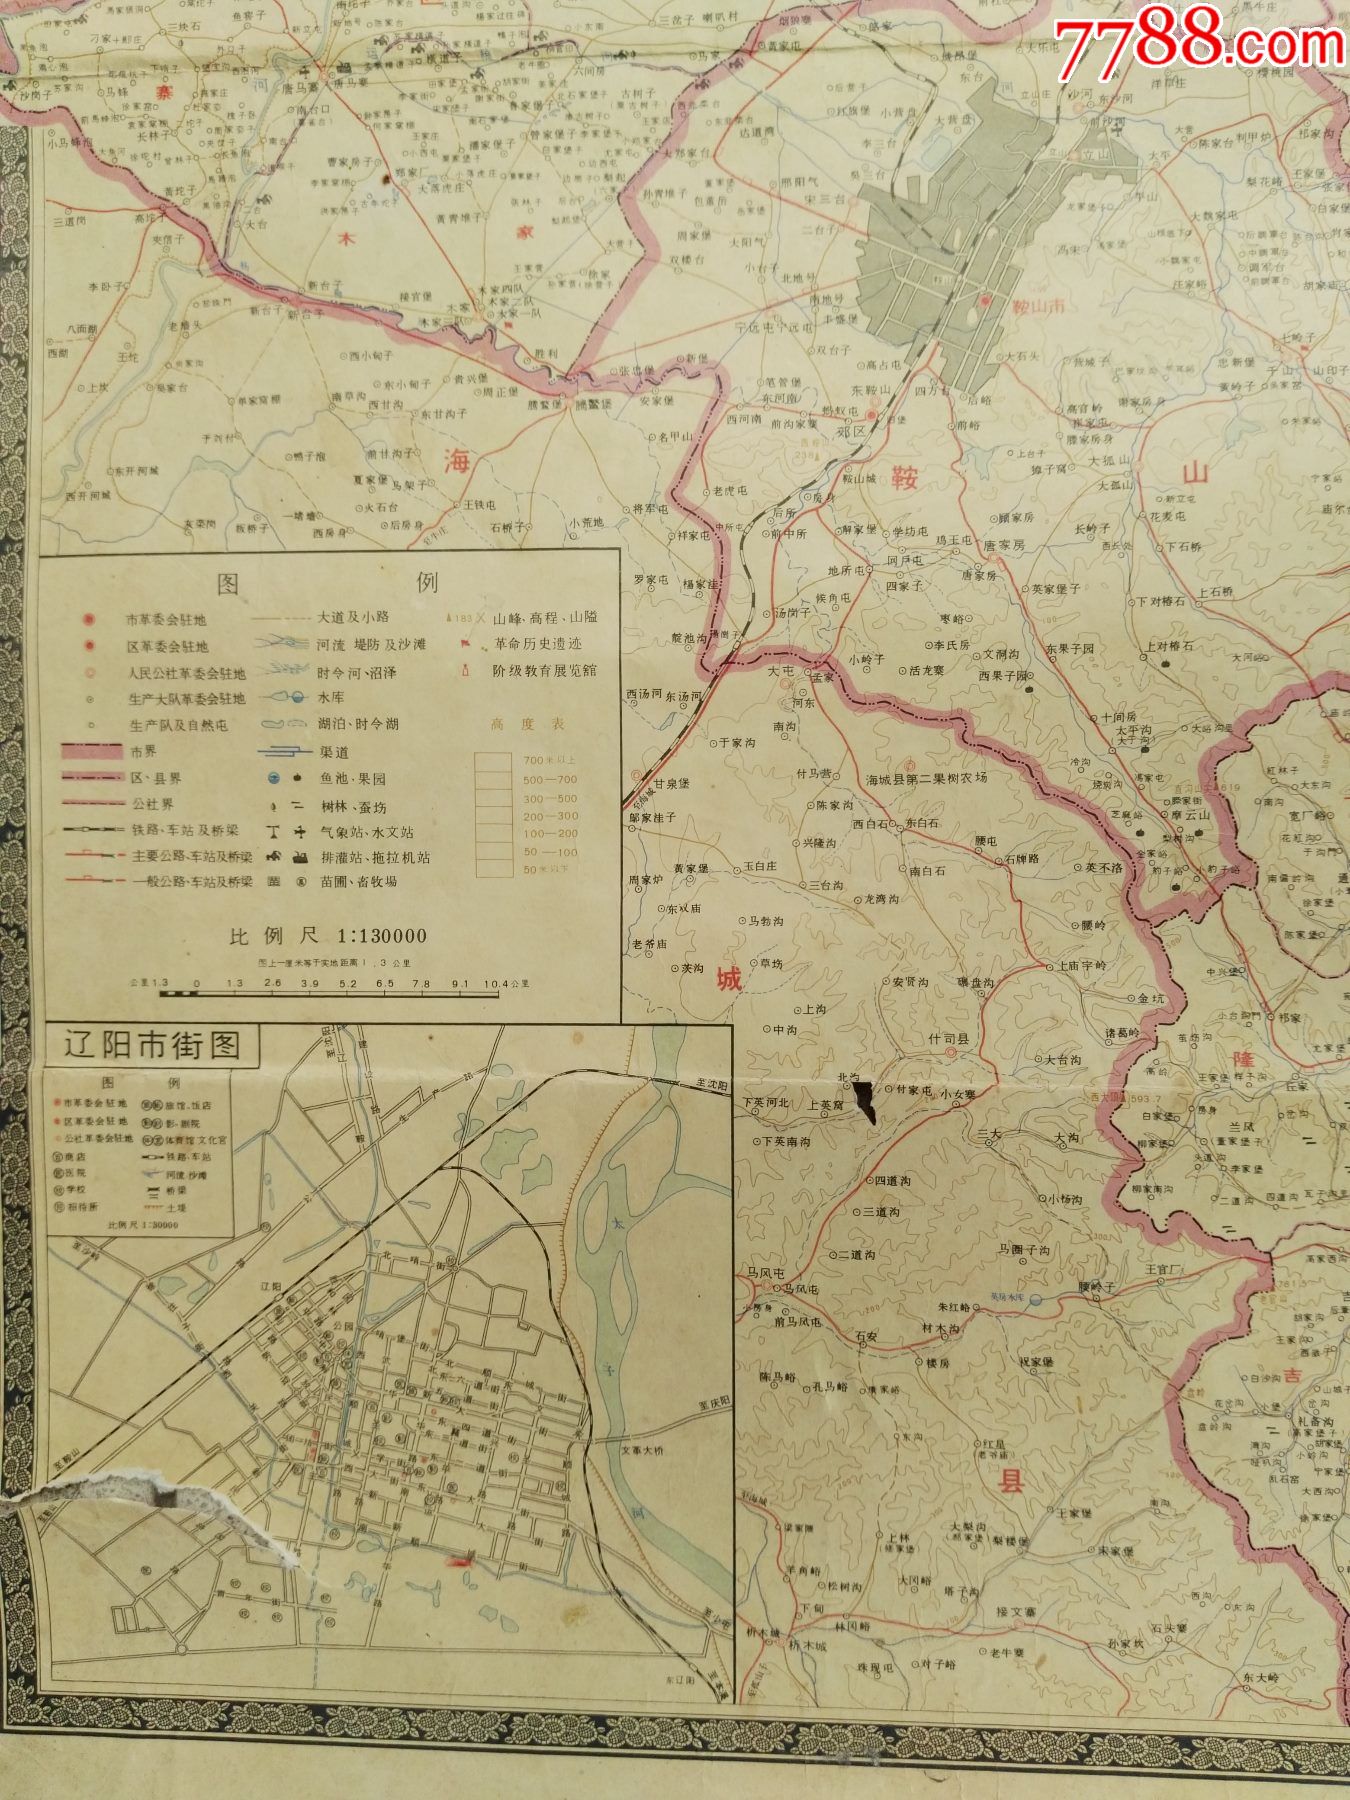 70年代辽阳市地图有备战备荒为人民语录(折叠放)